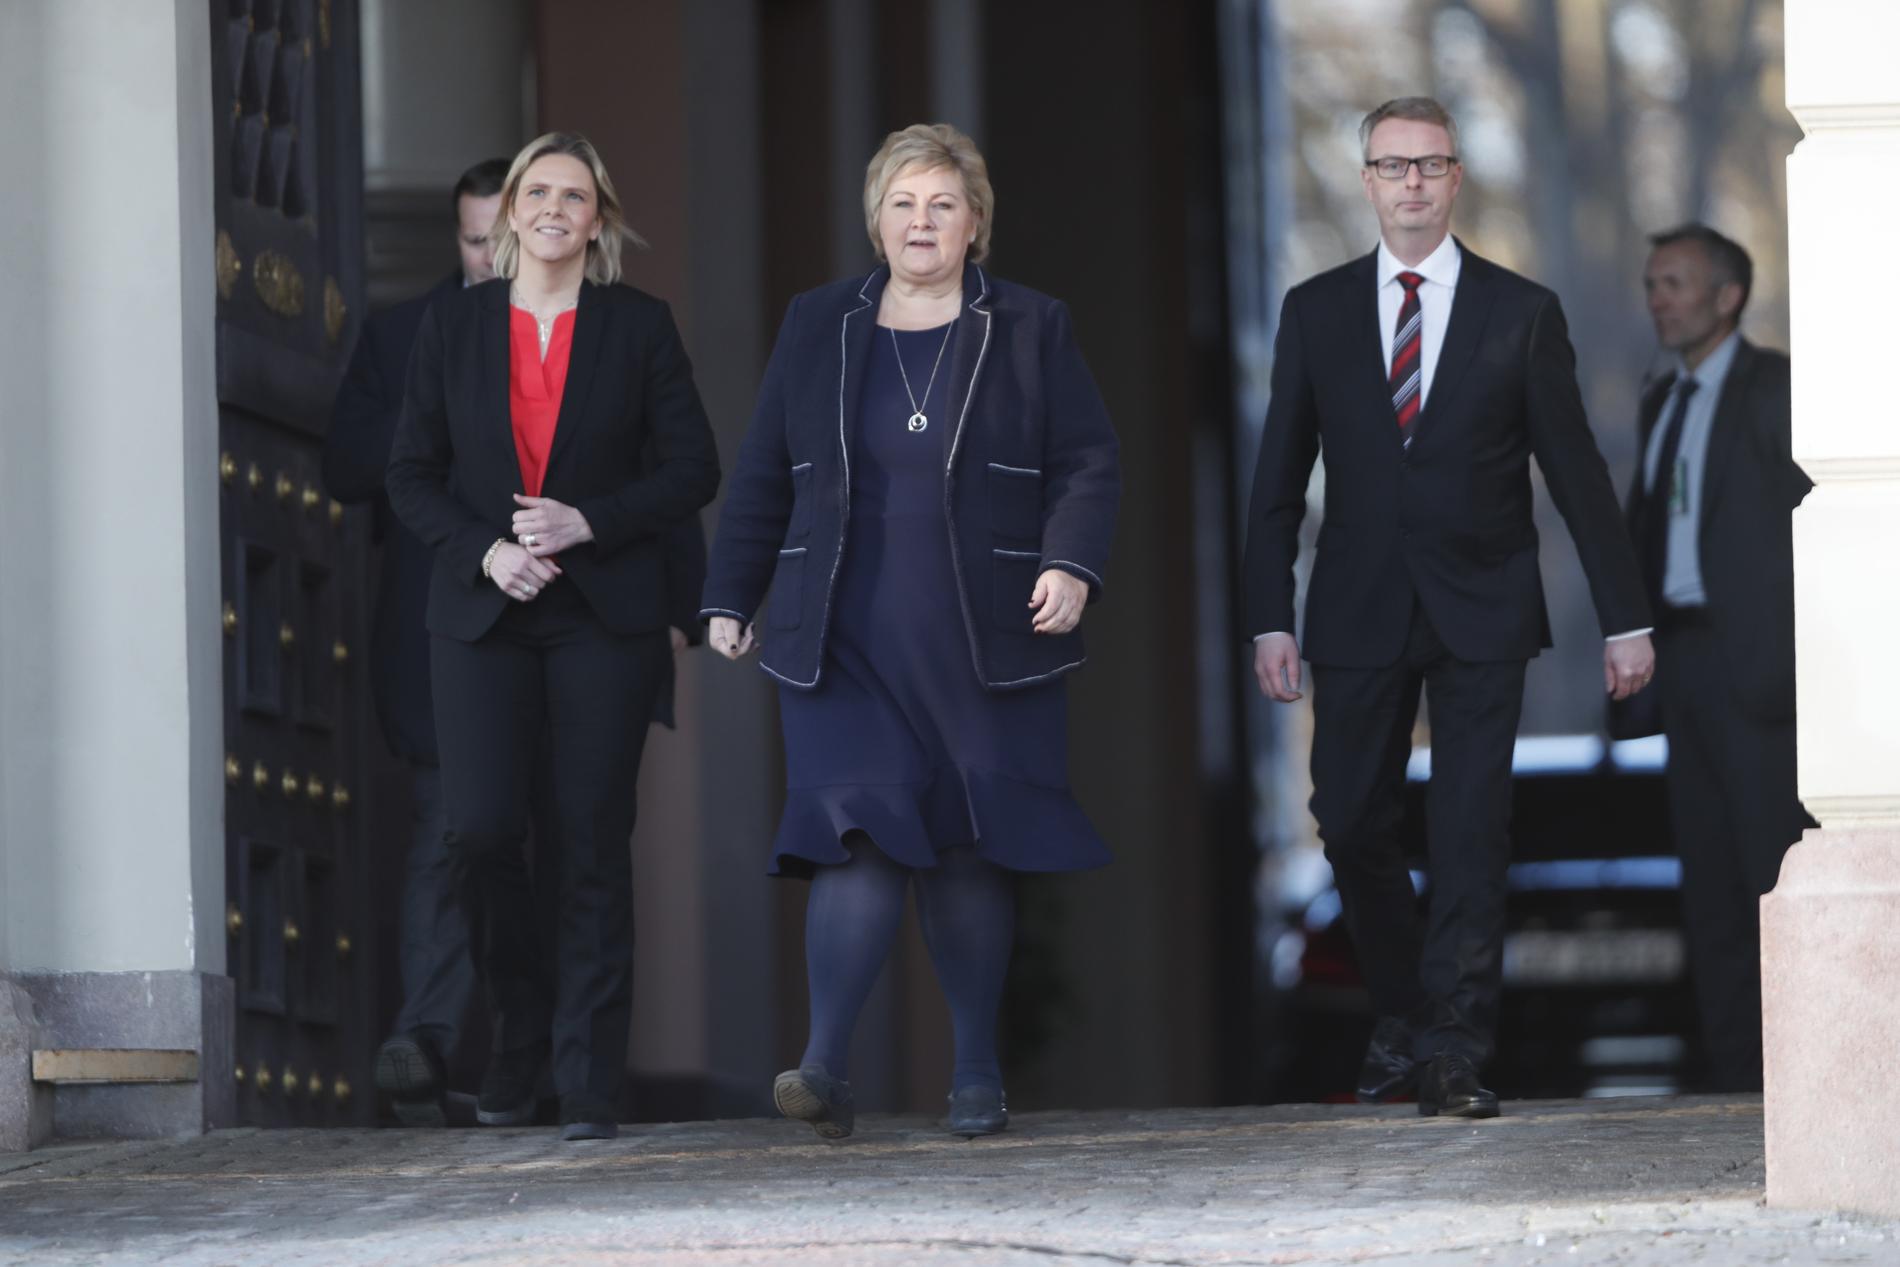 Statsminister Erna Solberg kommer ut på Slottsplassen tillsammans med Sylvi Listhaug och Terje Søviknes som får nya poster i regeringen.